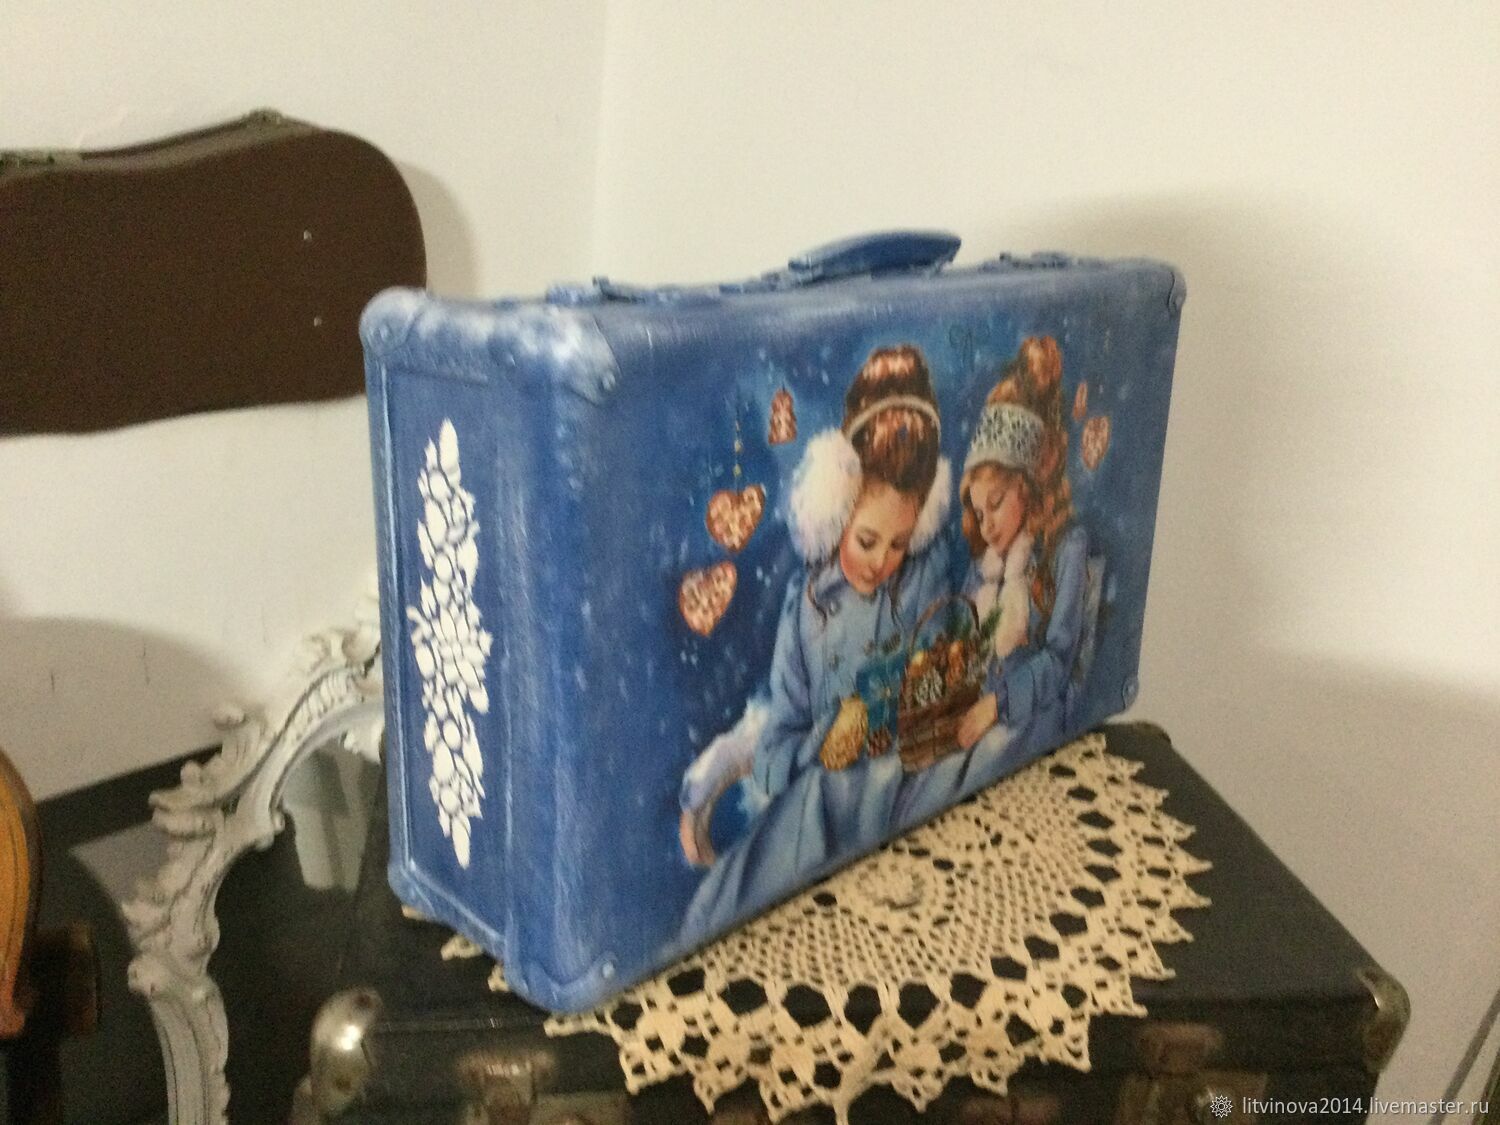  винтажный чемодан для елочных игрушек, Чемодан, Краснодар,  Фото №1